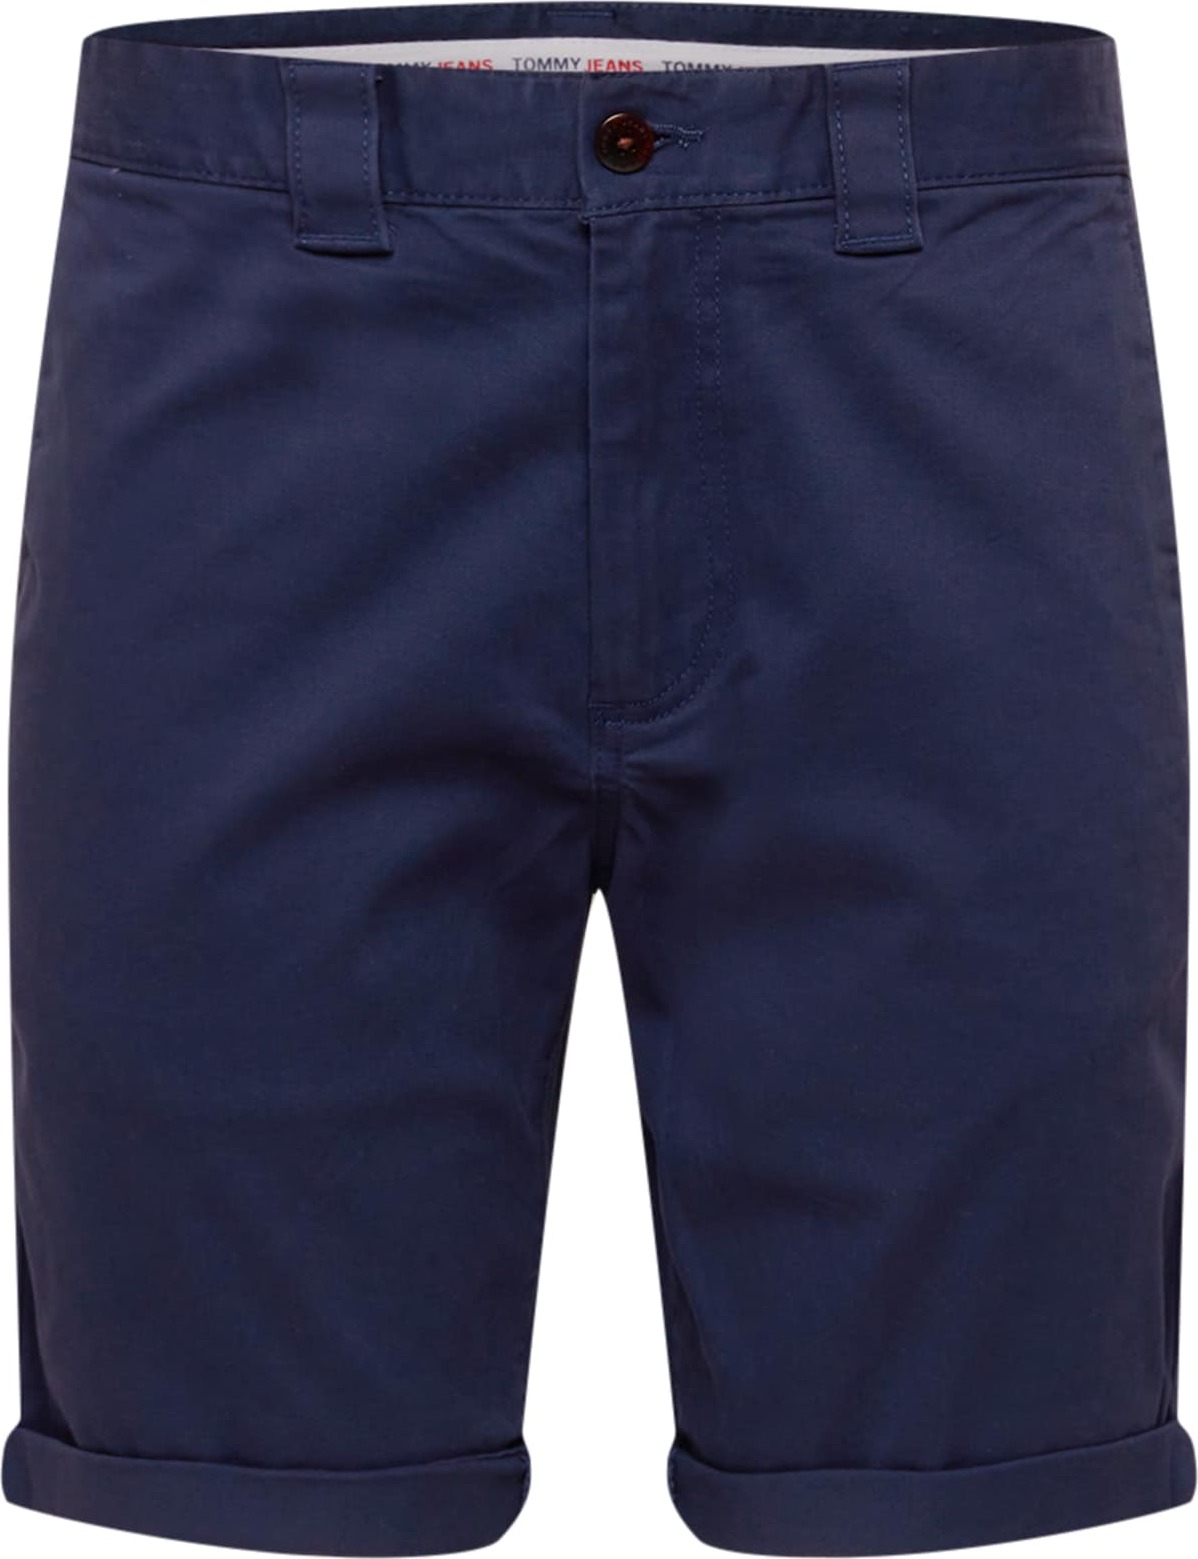 Tommy Jeans Chino kalhoty 'Scanton' marine modrá